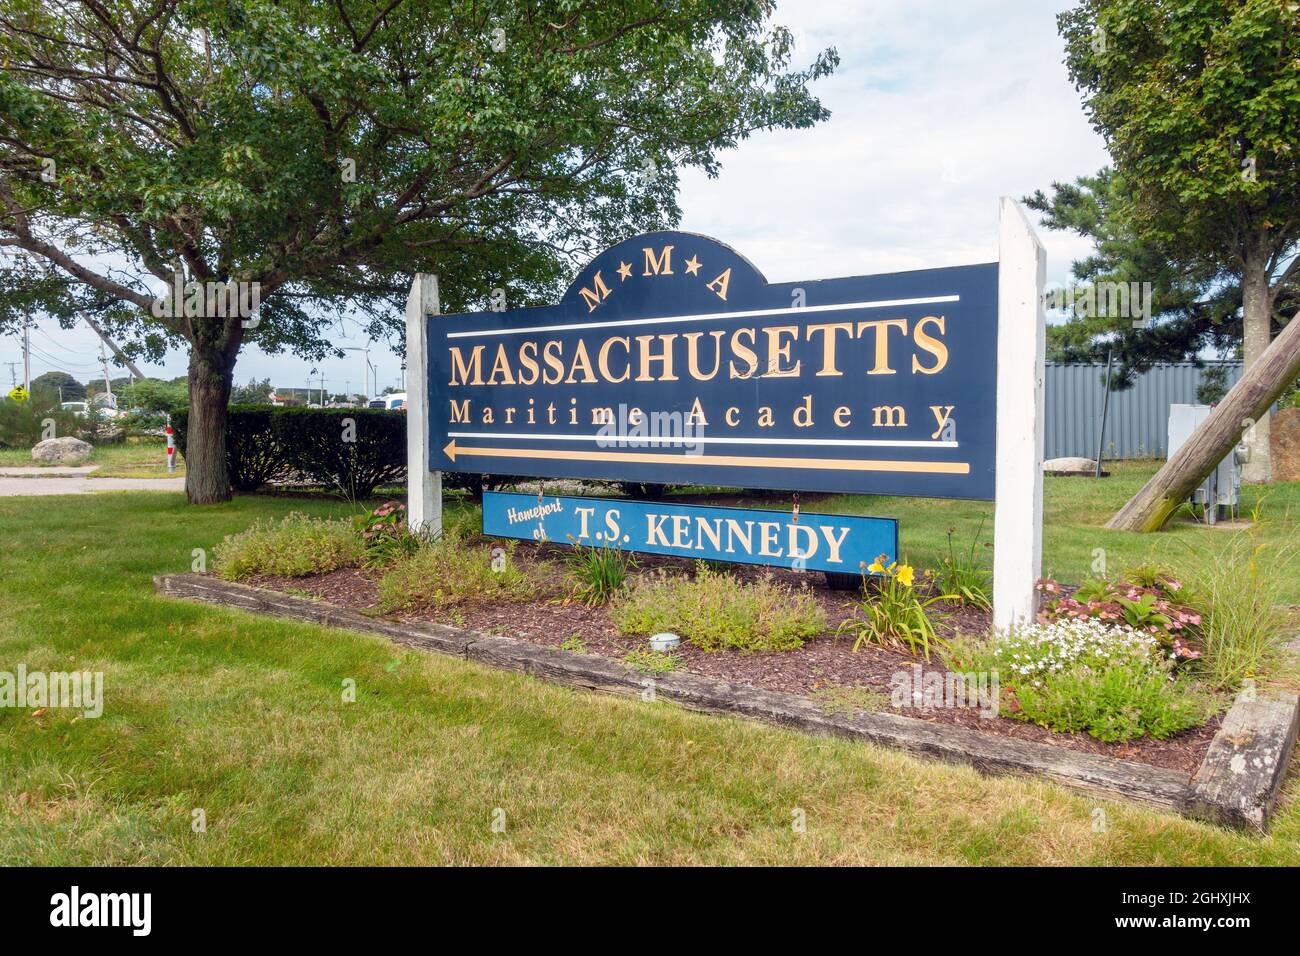 Massachusetts Maritime Academy connu sous le nom de MMA signe en été Banque D'Images